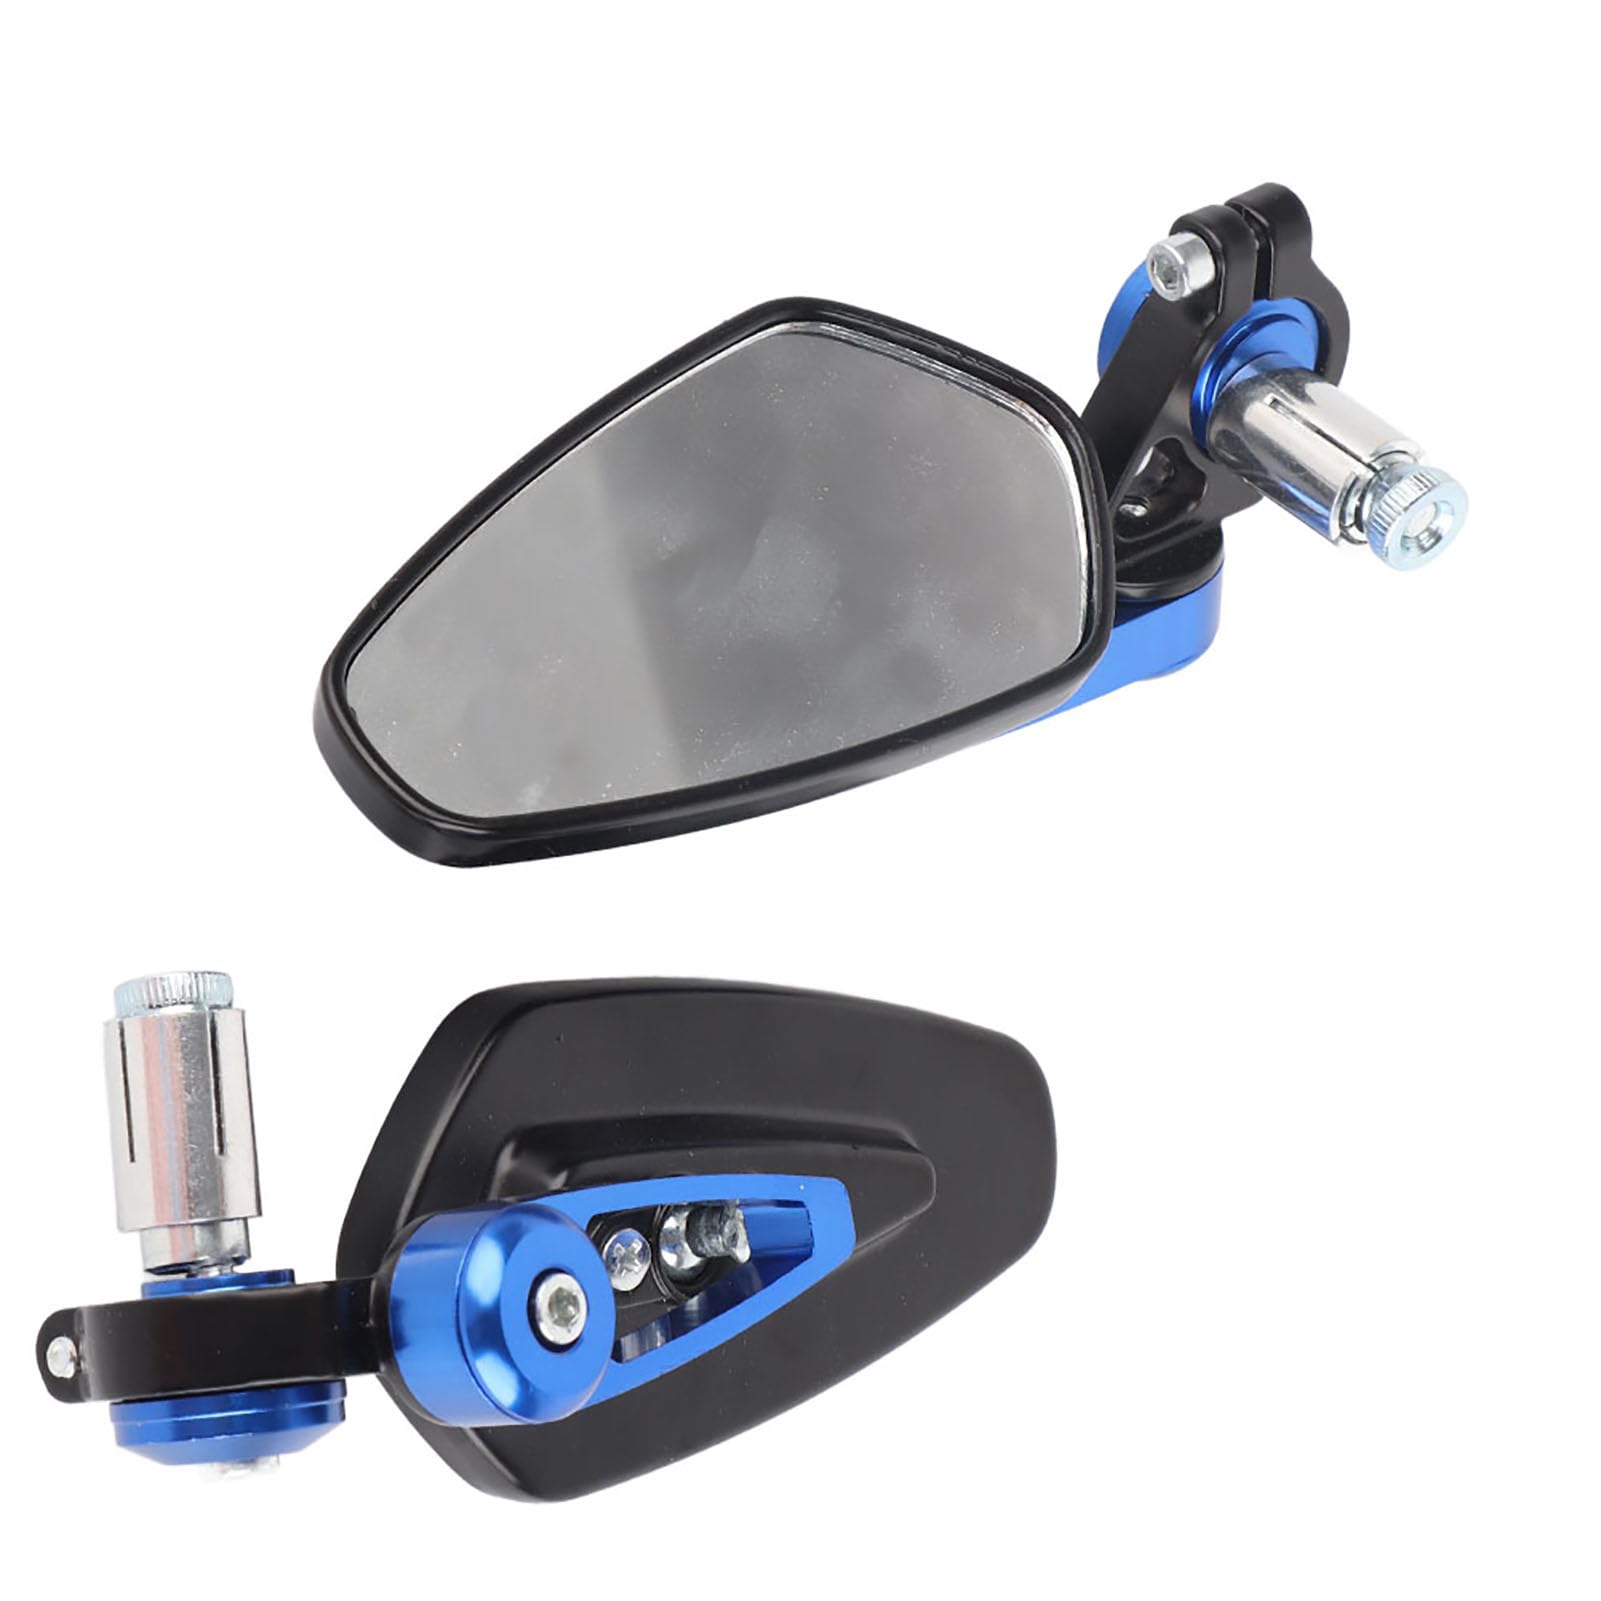 Verbessern Sie Sicherheit und Stil mit 7/8 22 Mm Universal-Seitenspiegeln aus Aluminiumlegierung. Robust und Zuverlässig, für Motorrad-Rückspiegel, Motorrad-Rückspiegel (BLUE) von Haofy